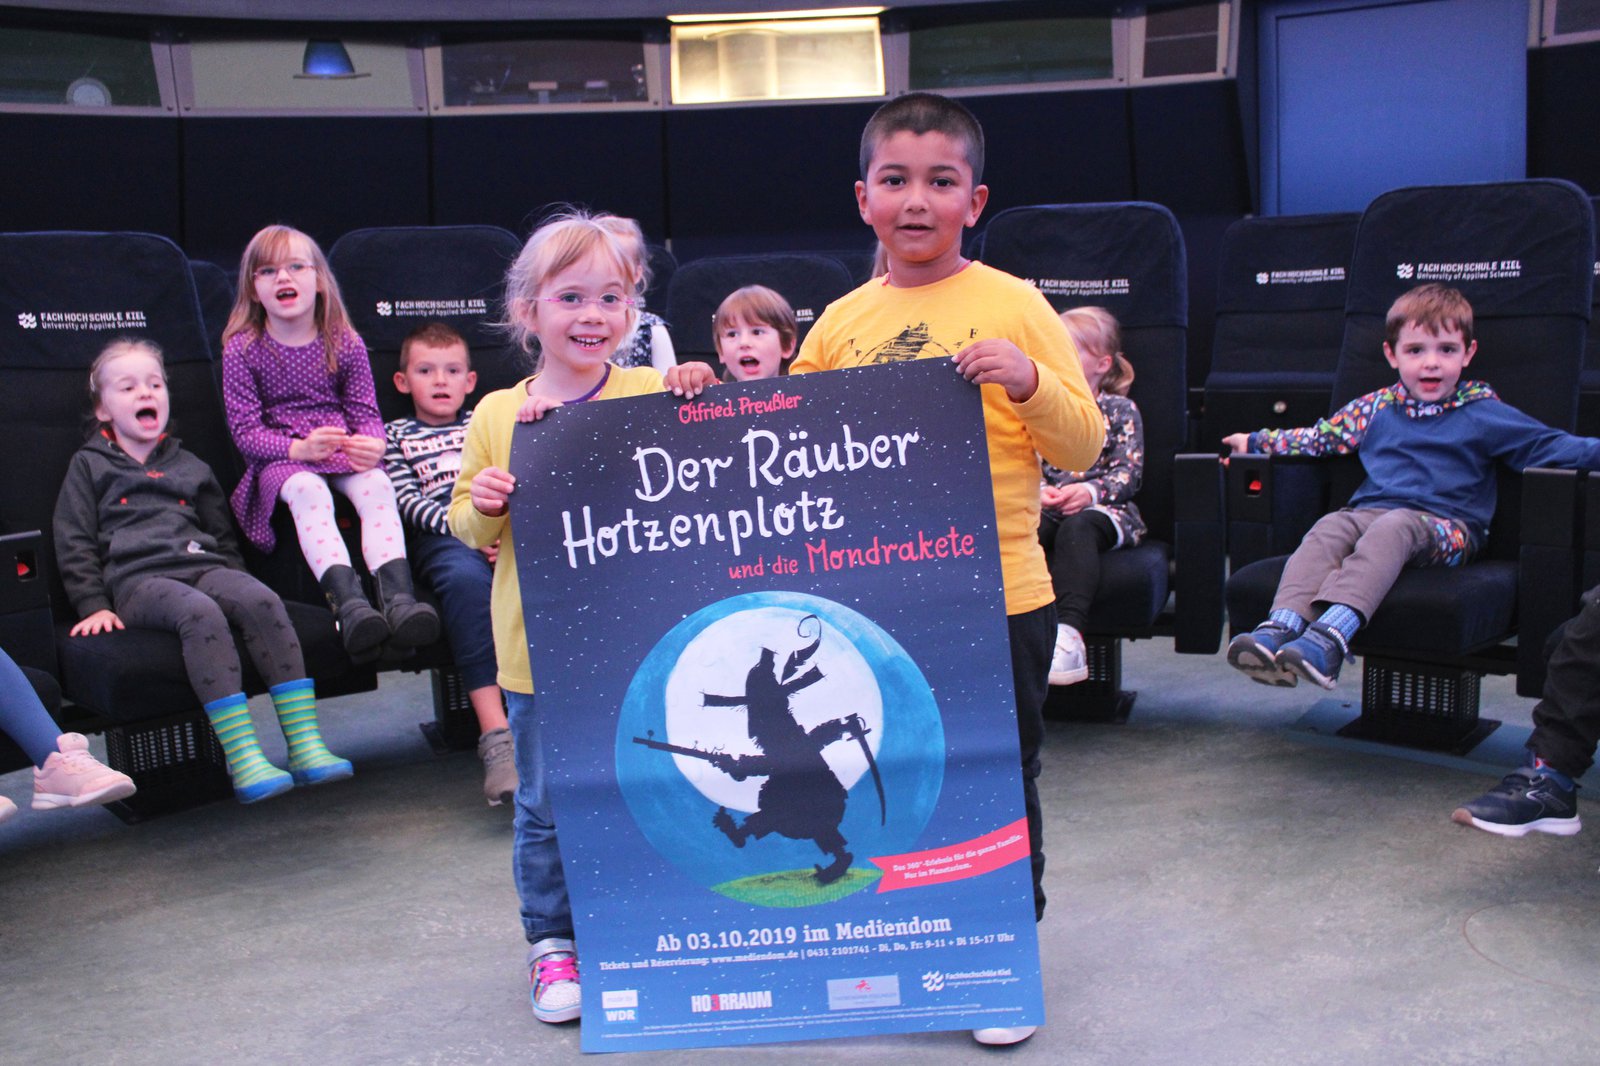 Zwei Kinder halten das Plakat zur Vorstellung "Räuber Hotzenplotz" in den Händen. Sie stehen in Mediendom und hinter ihnen befinden sich ihre Gruppenkameraden.